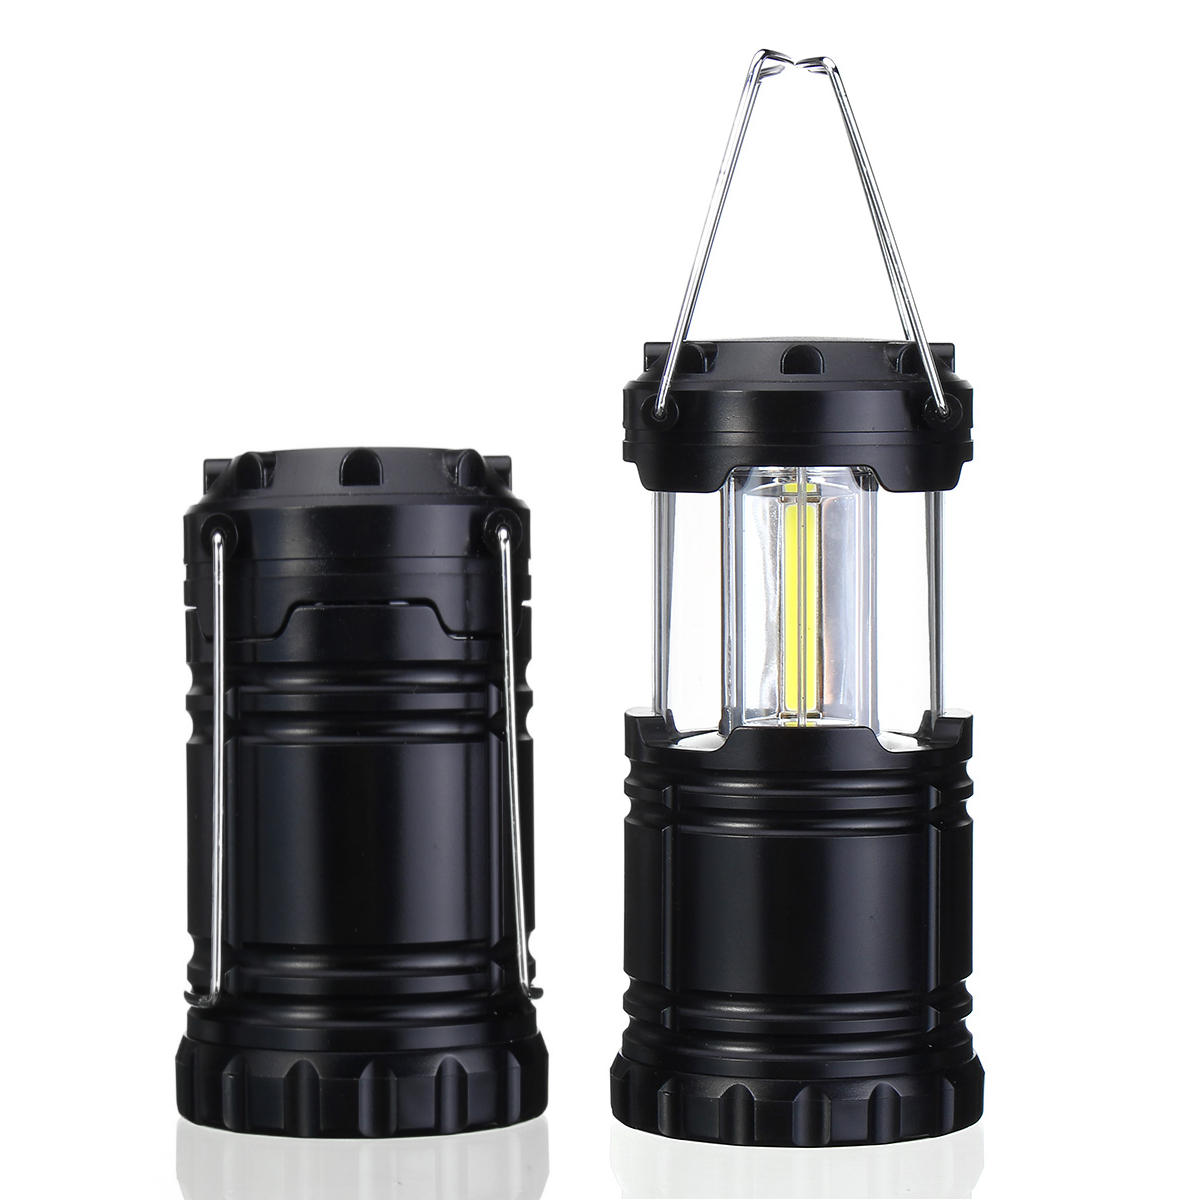 Portable LED Camping lanterne lampe de poche 3 AA Batteries Kits de survie pour Voyage de randonnée en plein air